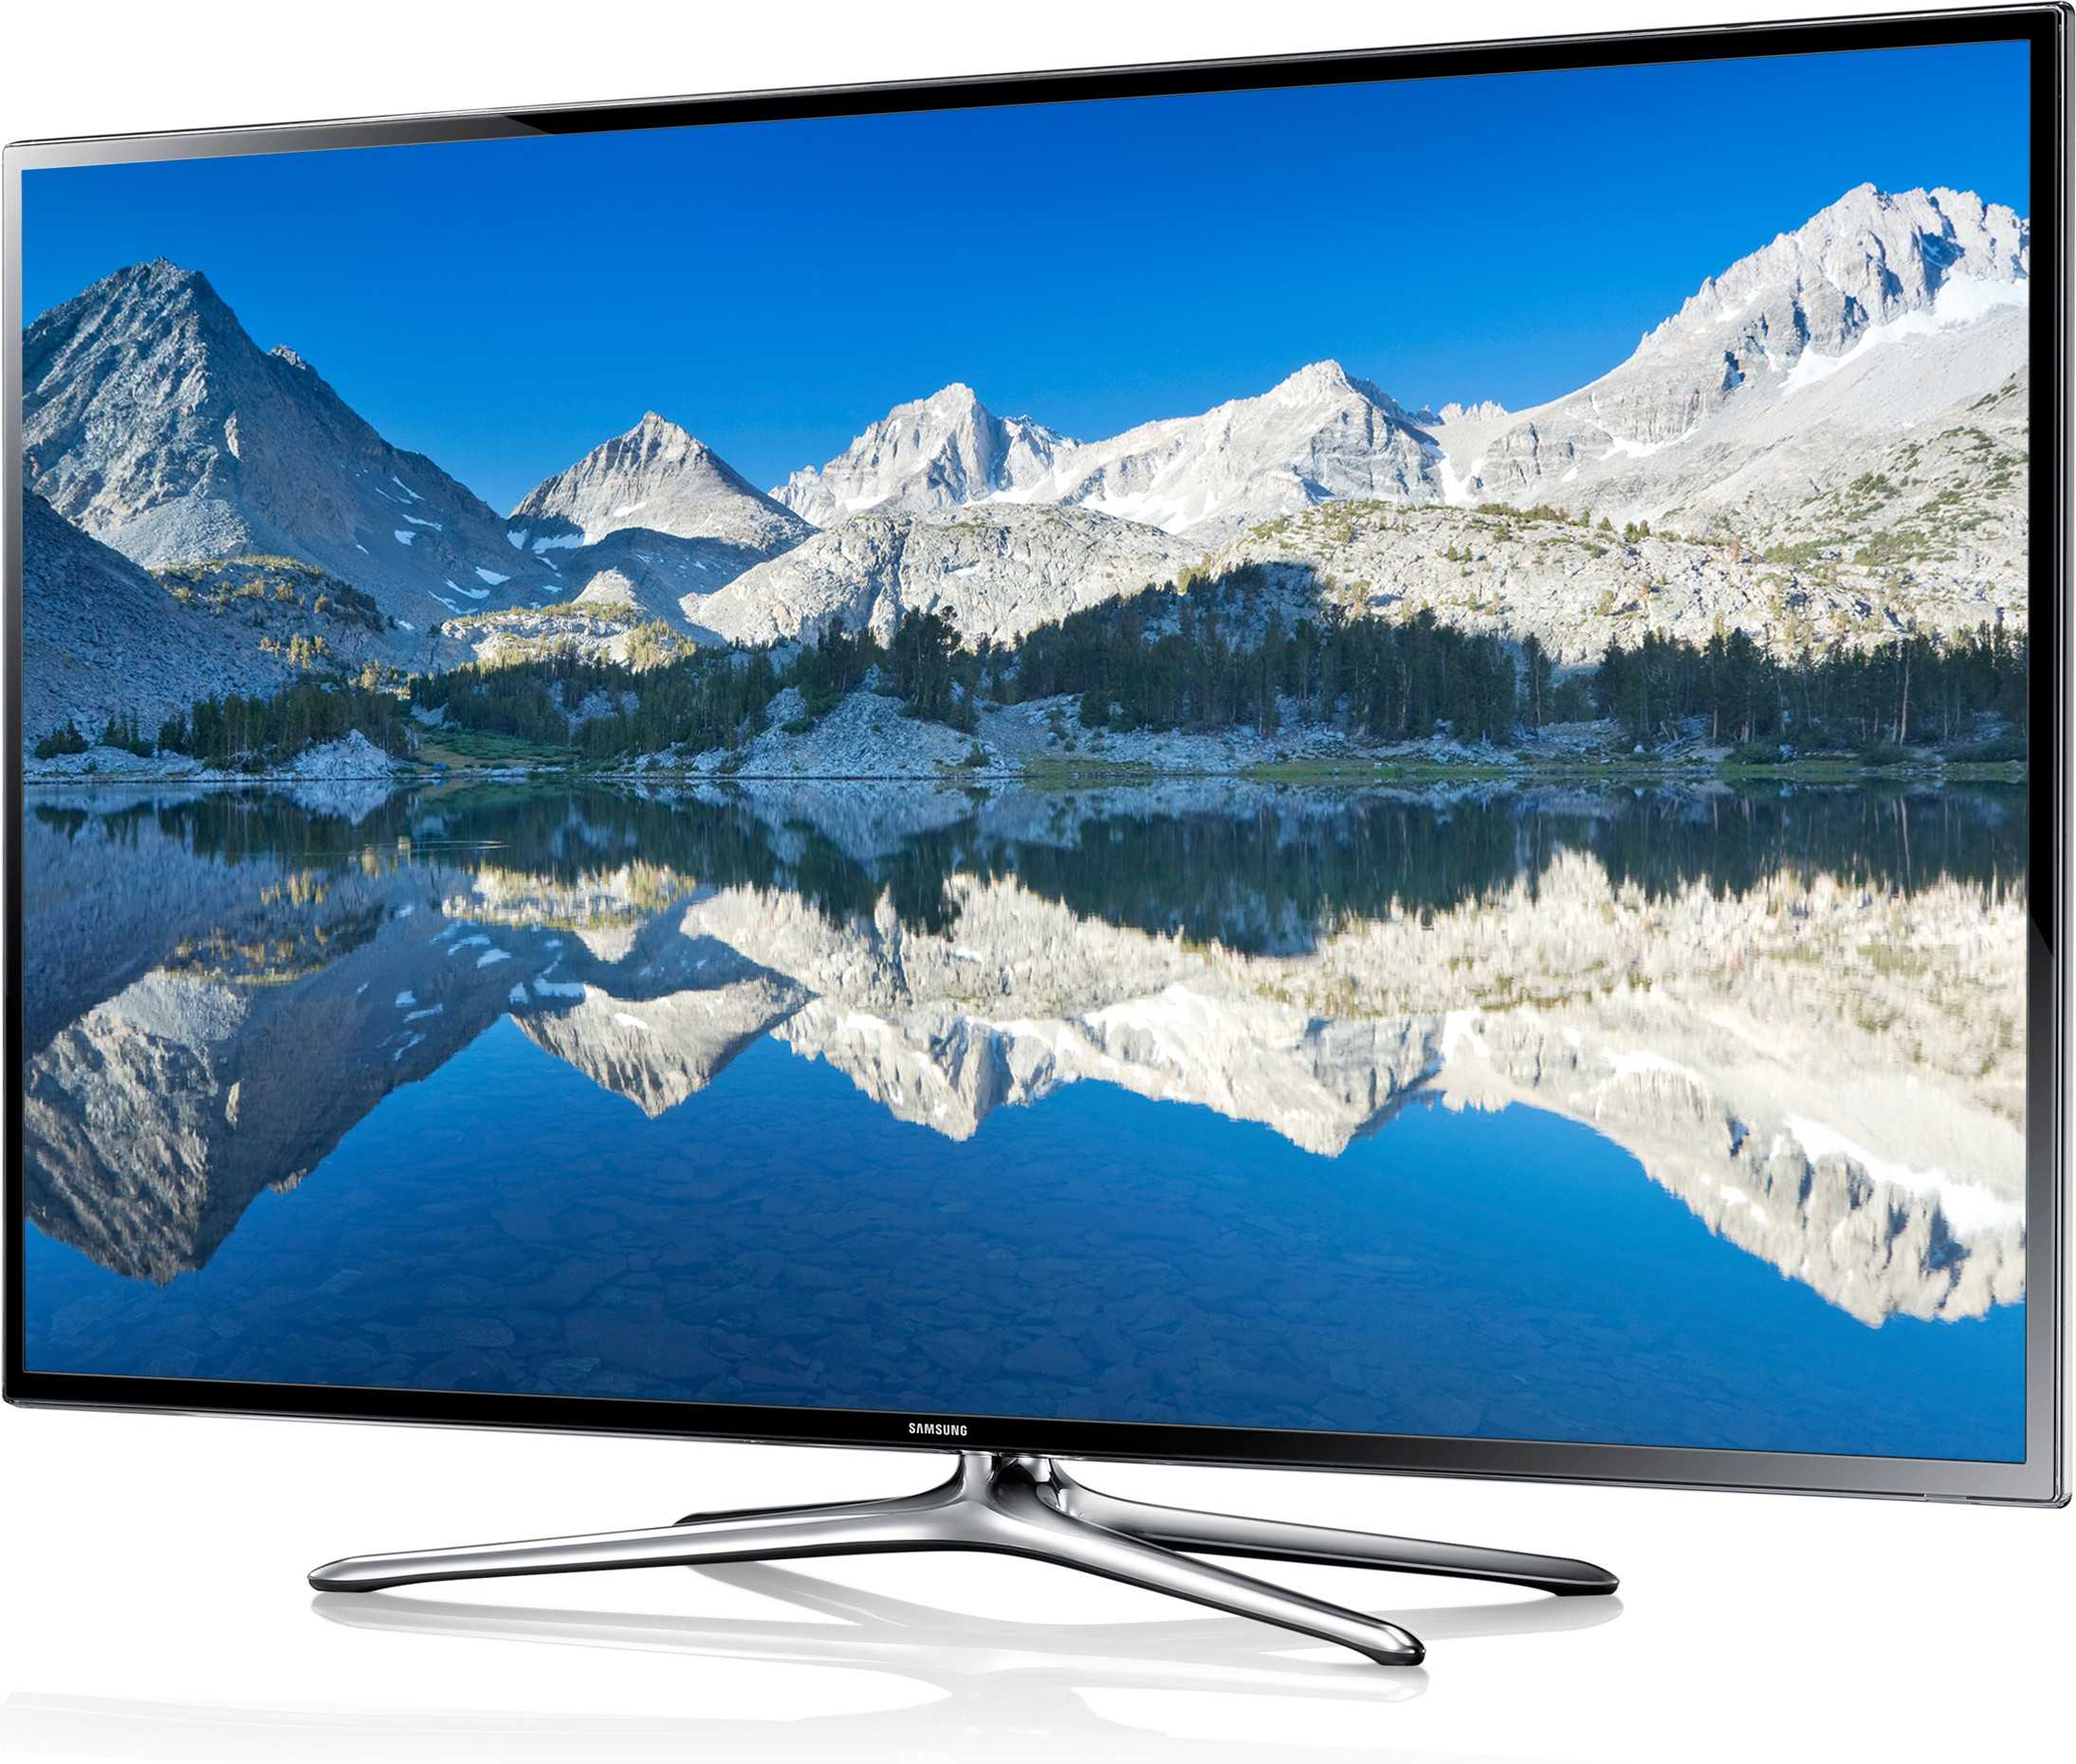 Телевизор Samsung UE40F6800 - подробные характеристики обзоры видео фото Цены в интернет-магазинах где можно купить телевизор Samsung UE40F6800